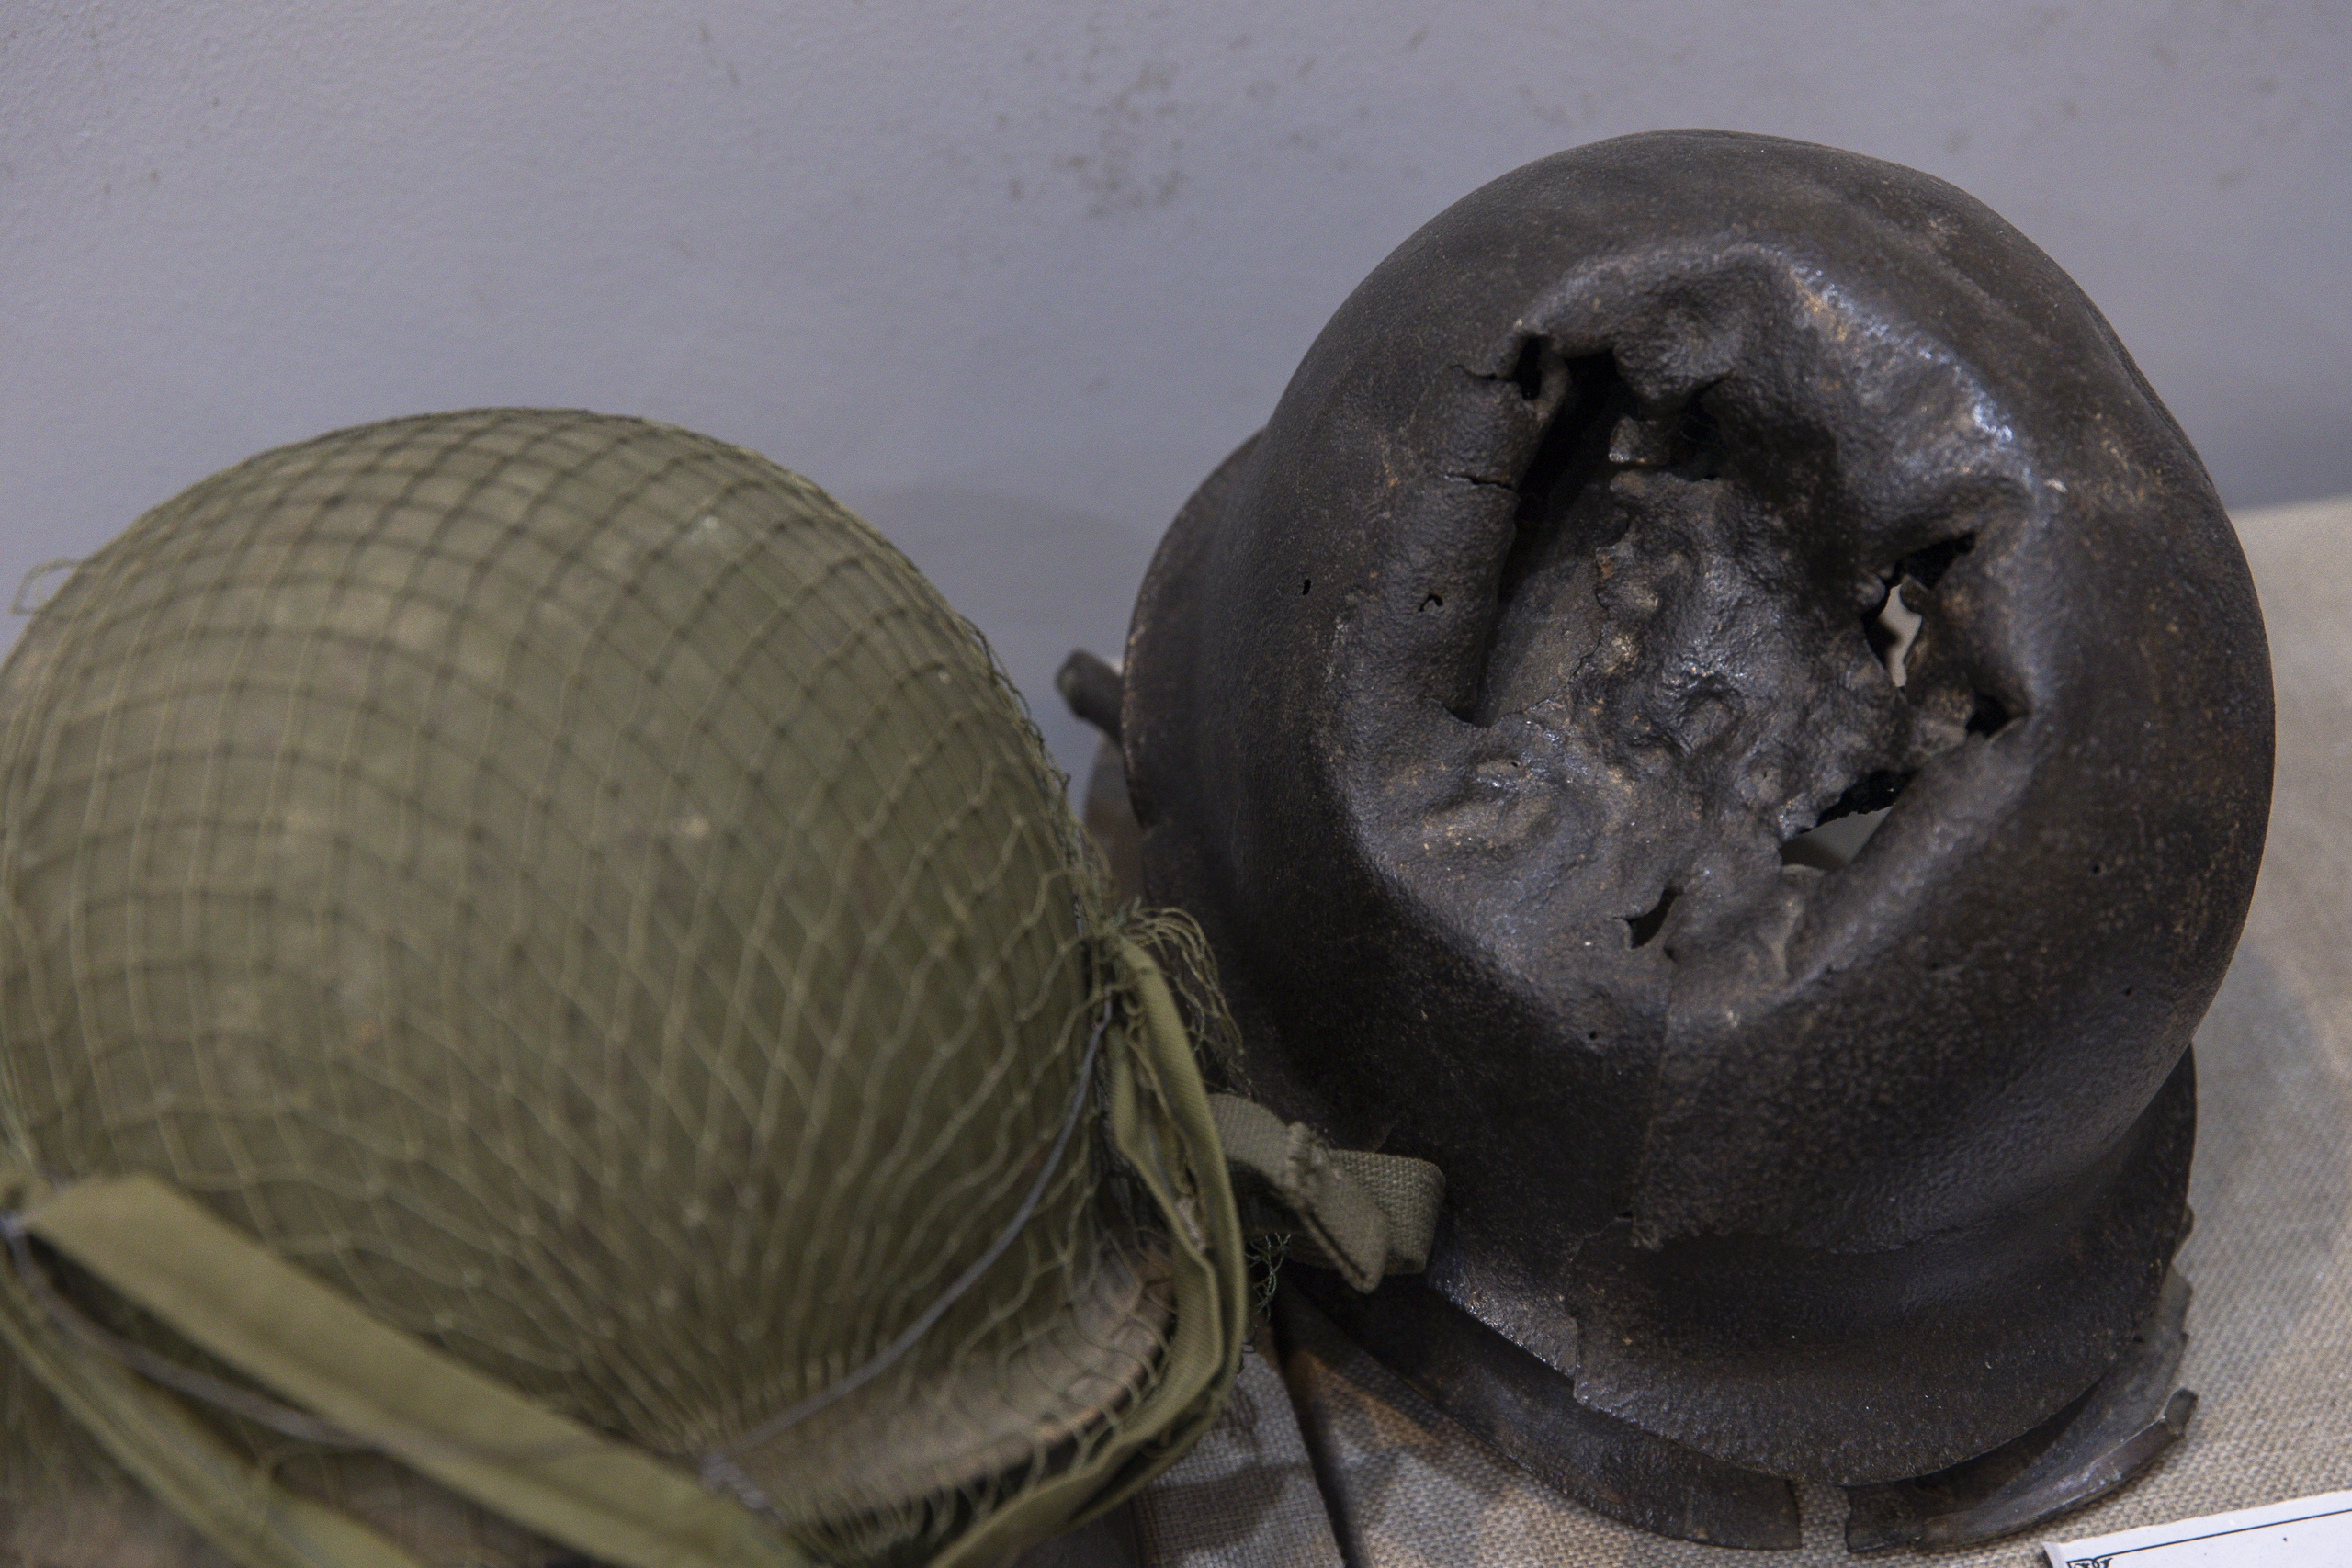 Một chiếc mũ sắt được quân đội Pháp sử dụng tại chiến trường năm 1954 đã biến dạng, được ta thu lại sau khi kết thúc chiến dịch. Ngoài ra, rất nhiều mẫu súng, đạn được và quân tư trang của quân đội Pháp cũng được thu lại để đưa vào bảo tàng